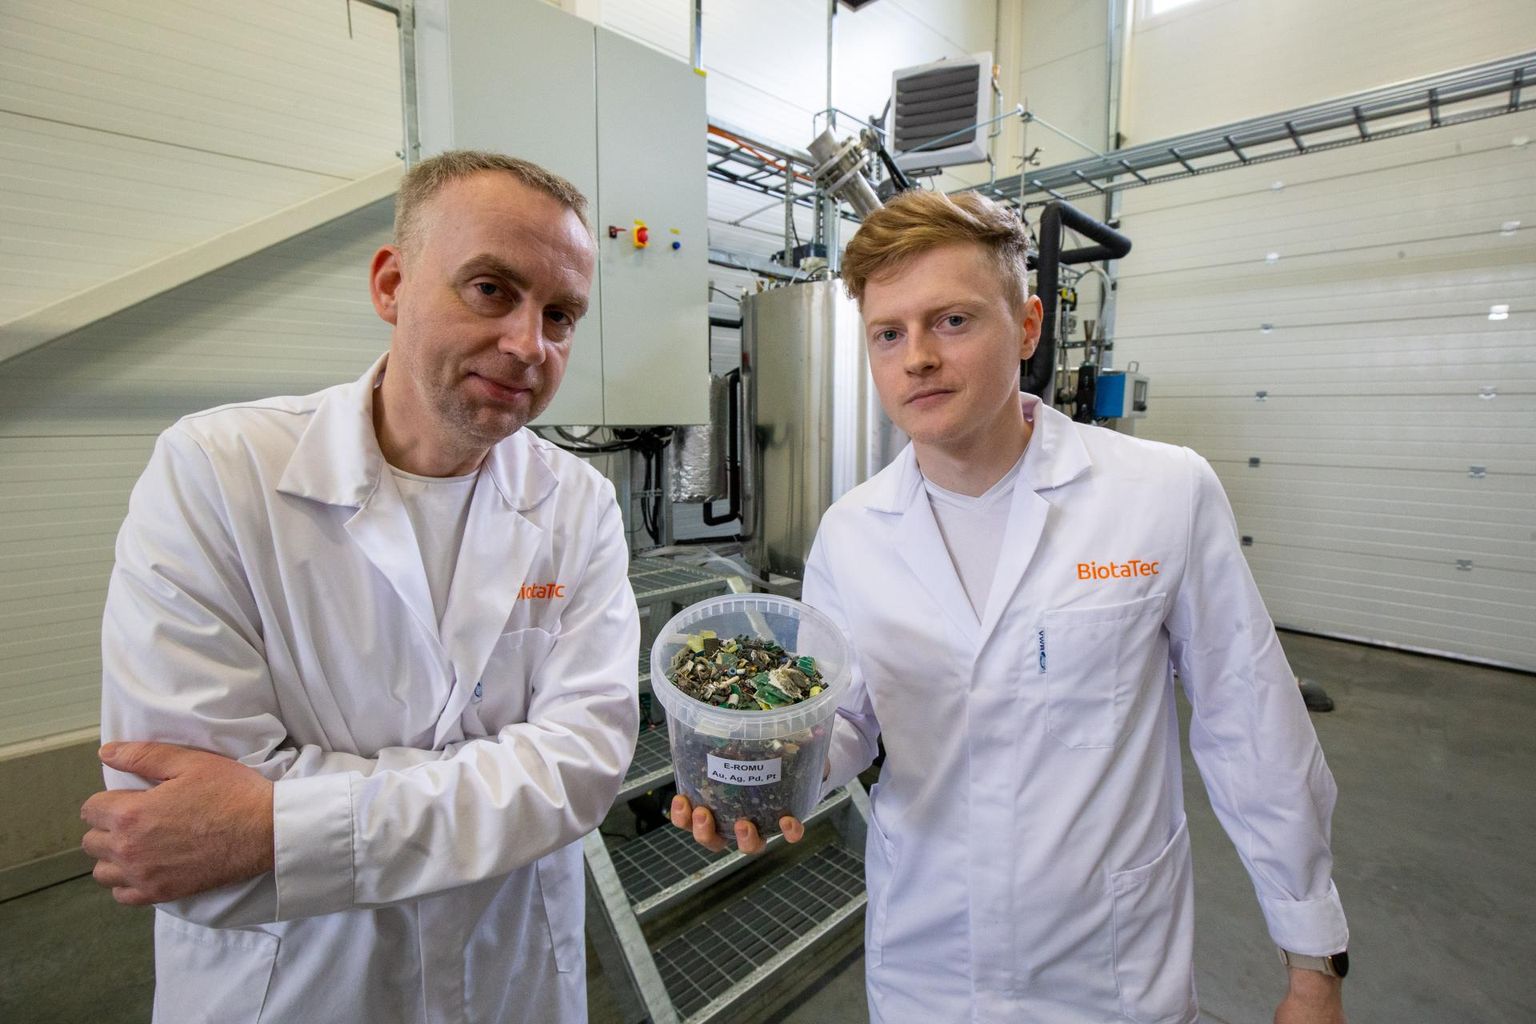 BiotaTeci teadusjuht Priit Jõers (vasakul) ja teadur Jaan Vihalemm näitasid purustatud elektroonikajäätmeid, mis peagi lähevad nende selja taga asuvasse reaktorisse, et bakterite abil neist väärismetallid kätte saada.